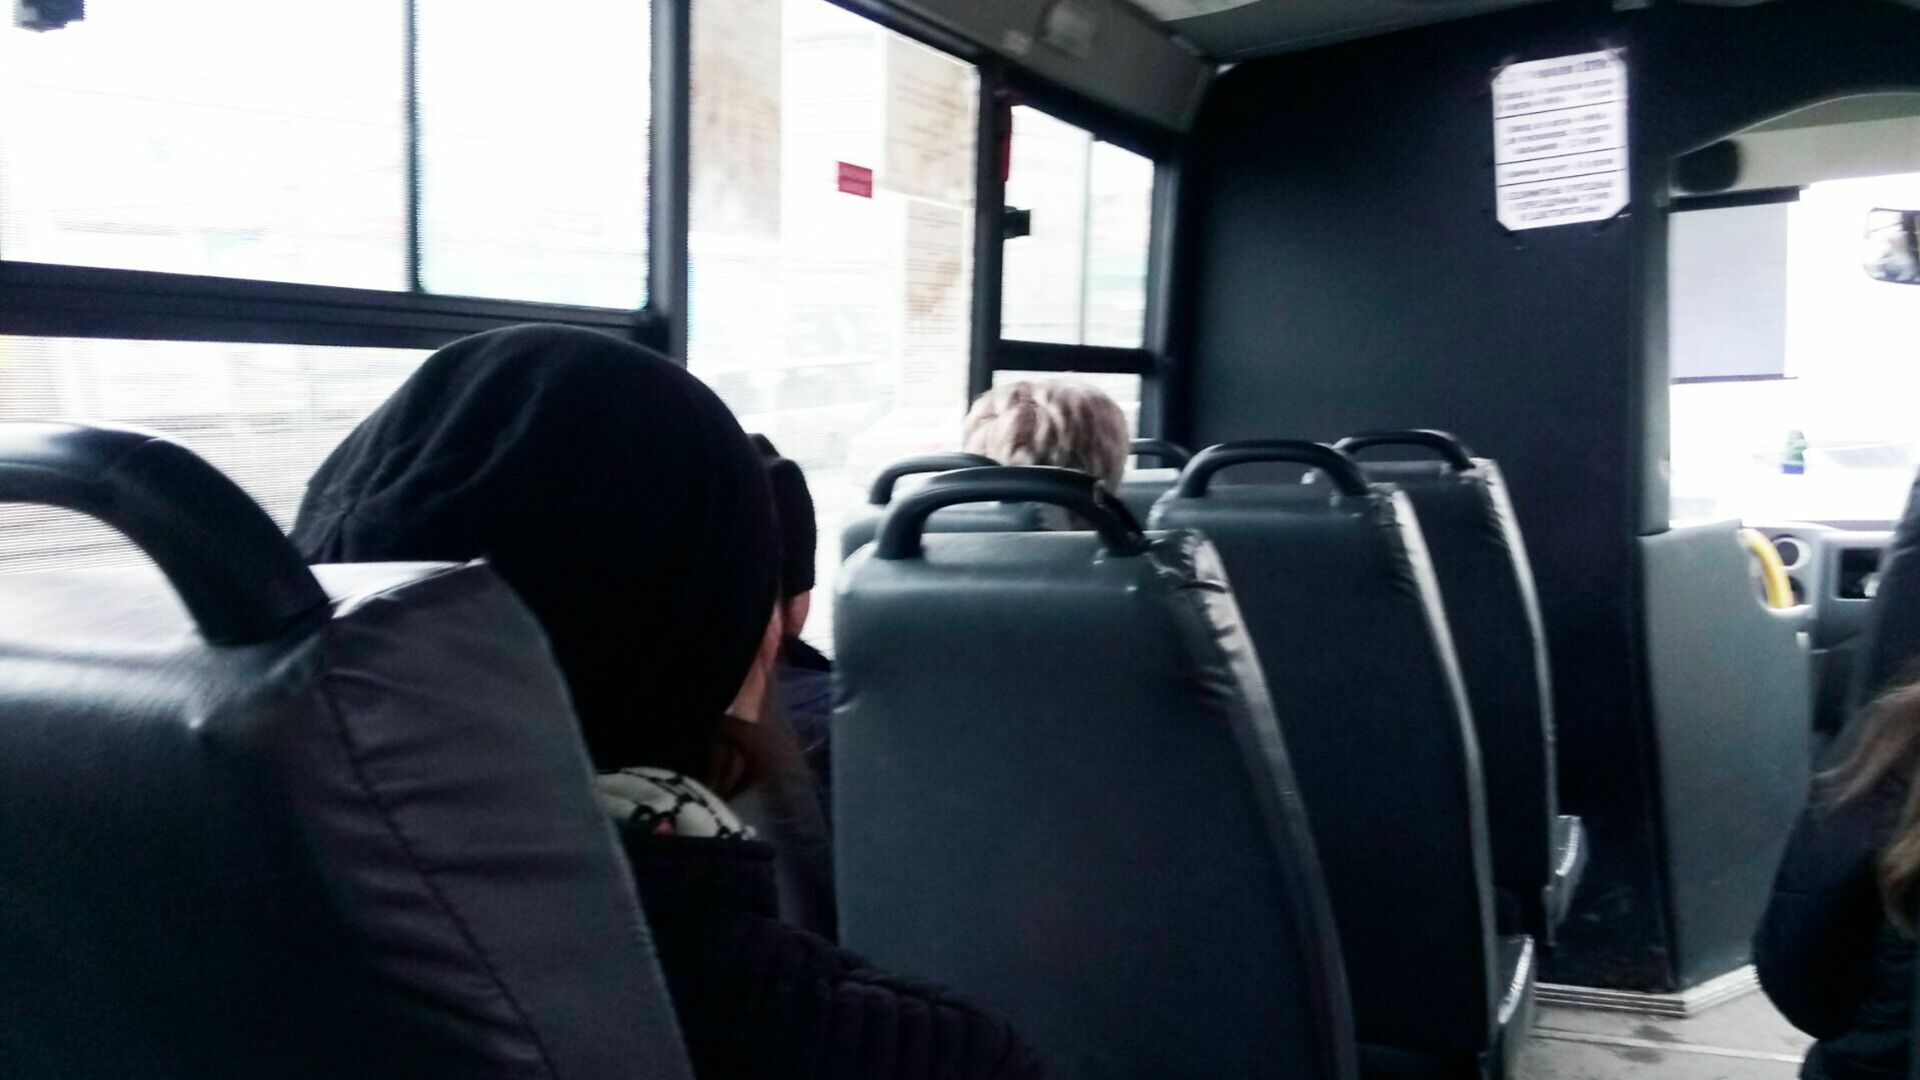 Скандал с матом устроила в автобусе тагильчанка из-за замечания